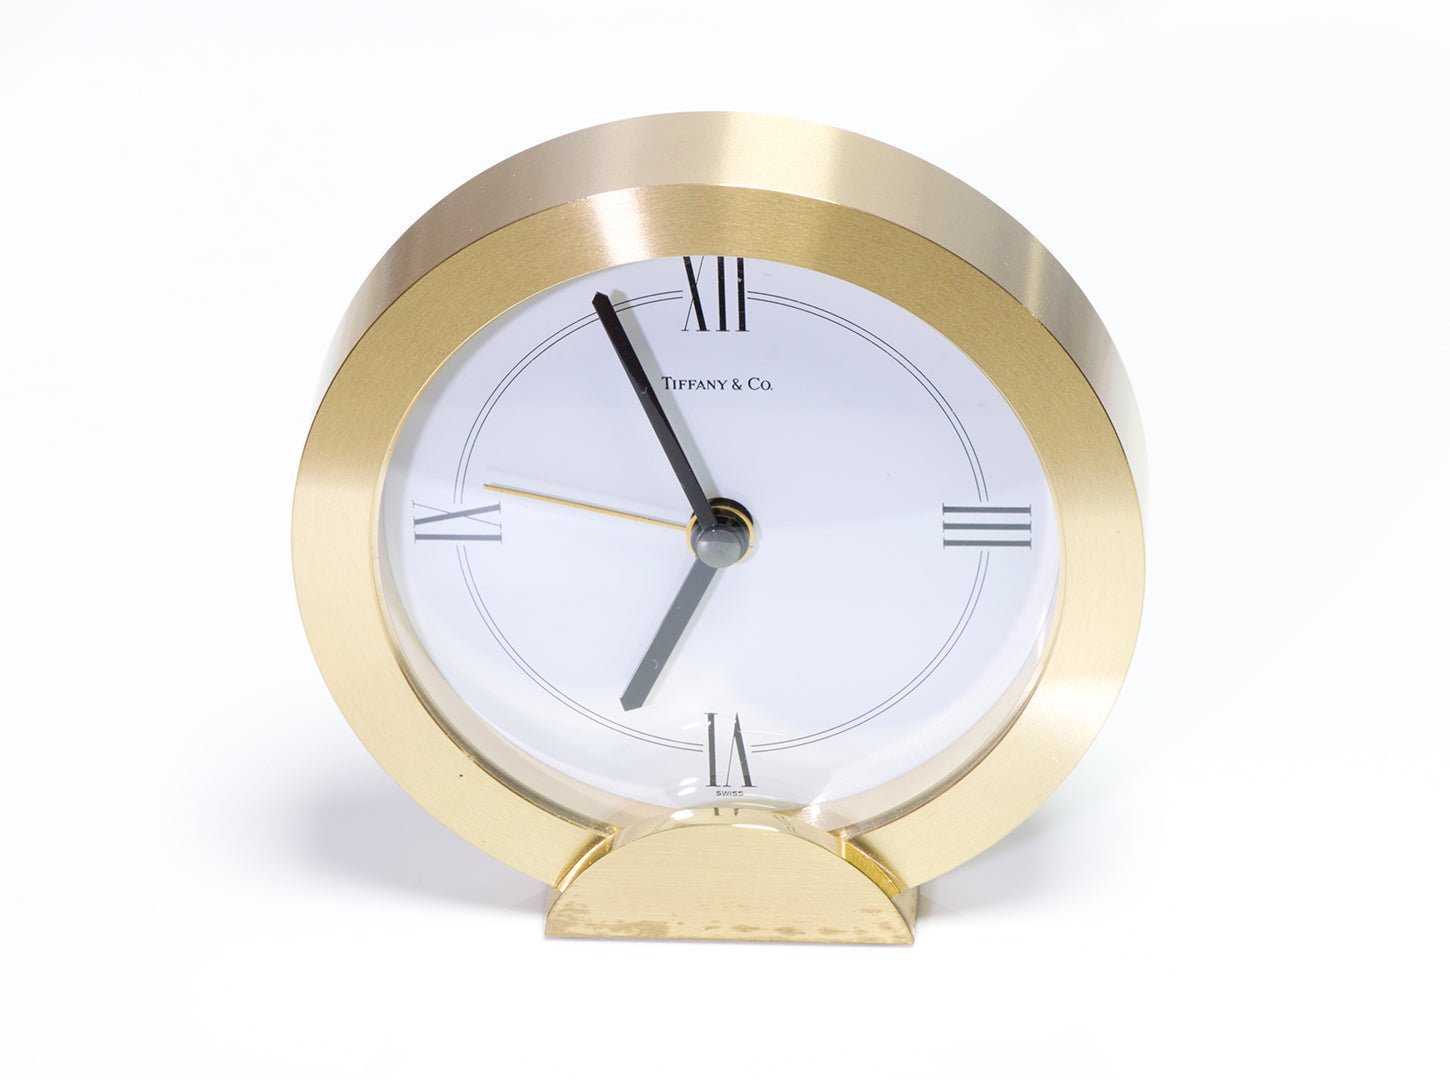 Tiffany & Co. Quartz Alarm Desk Clock